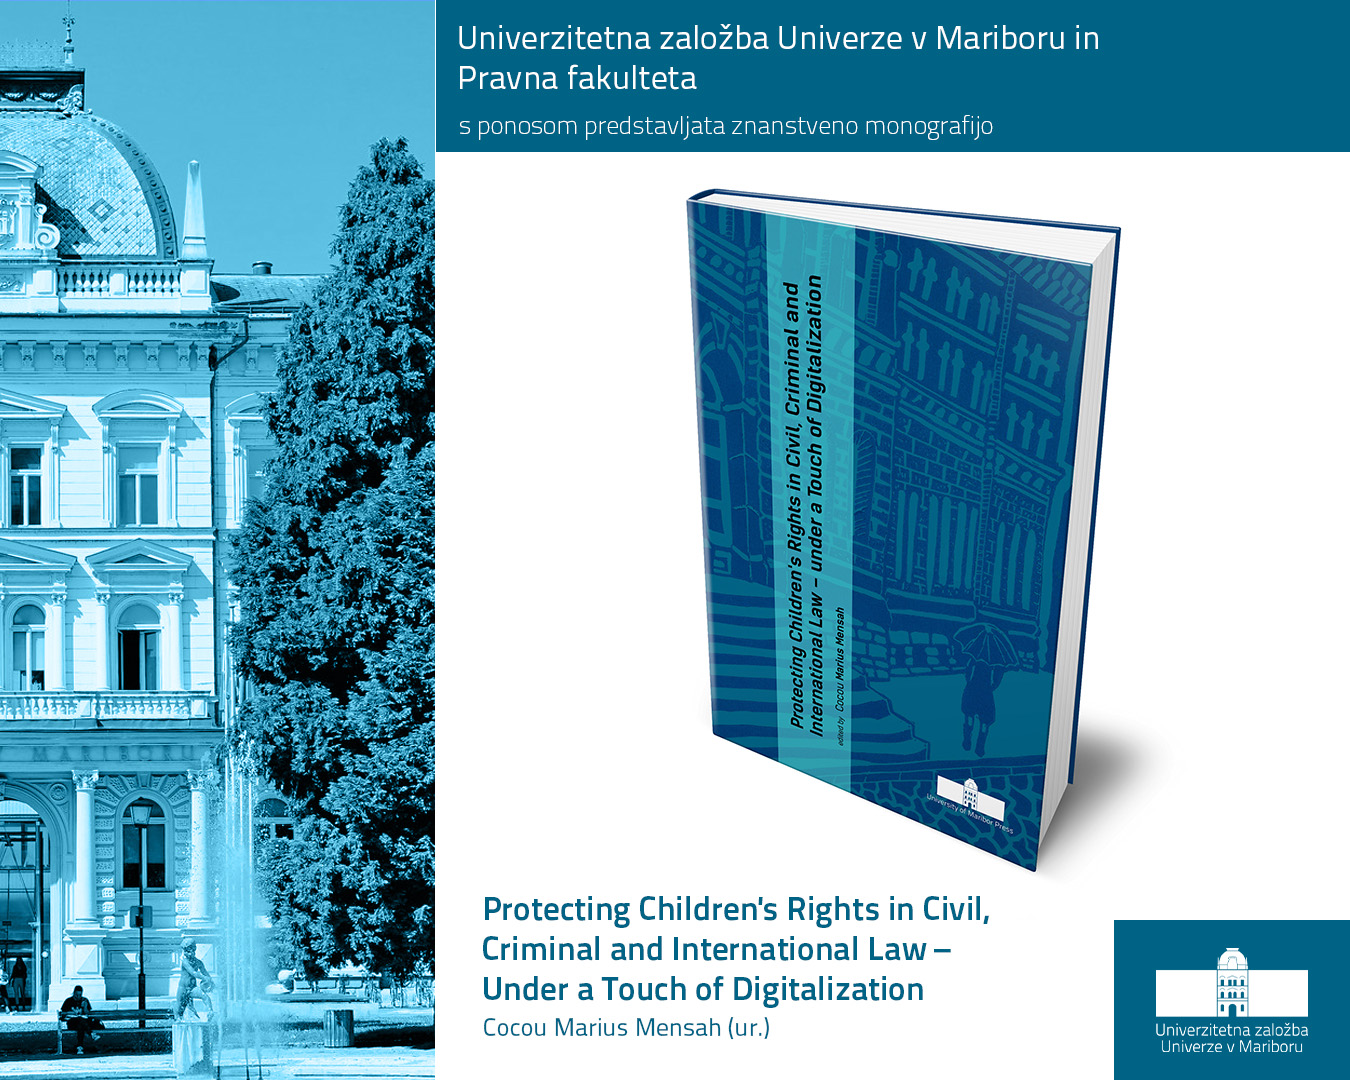 Pri Univerzitetni založbi Univerze v Mariboru izšla publikacija z naslovom: Protecting Children's Rights in Civil, Criminal and International Law – Under a Touch of Digitalization